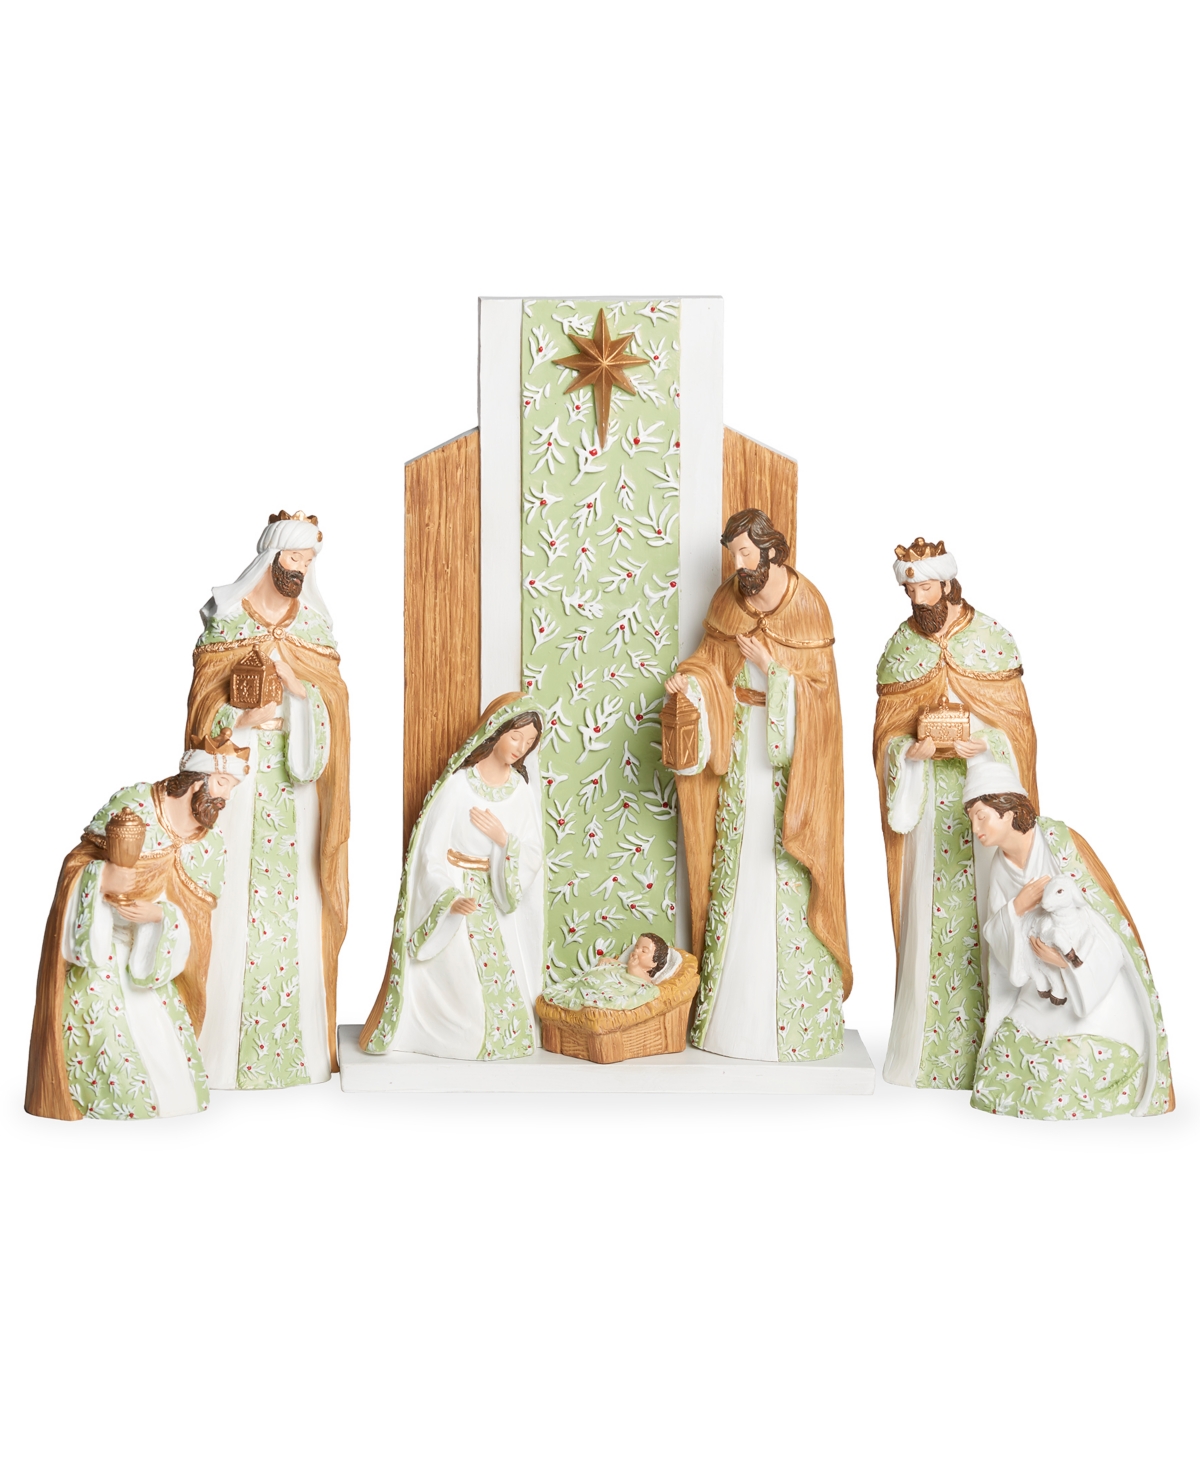 Roman 13" H 8 Piece Set Nativity Mistletoe In Multi Color